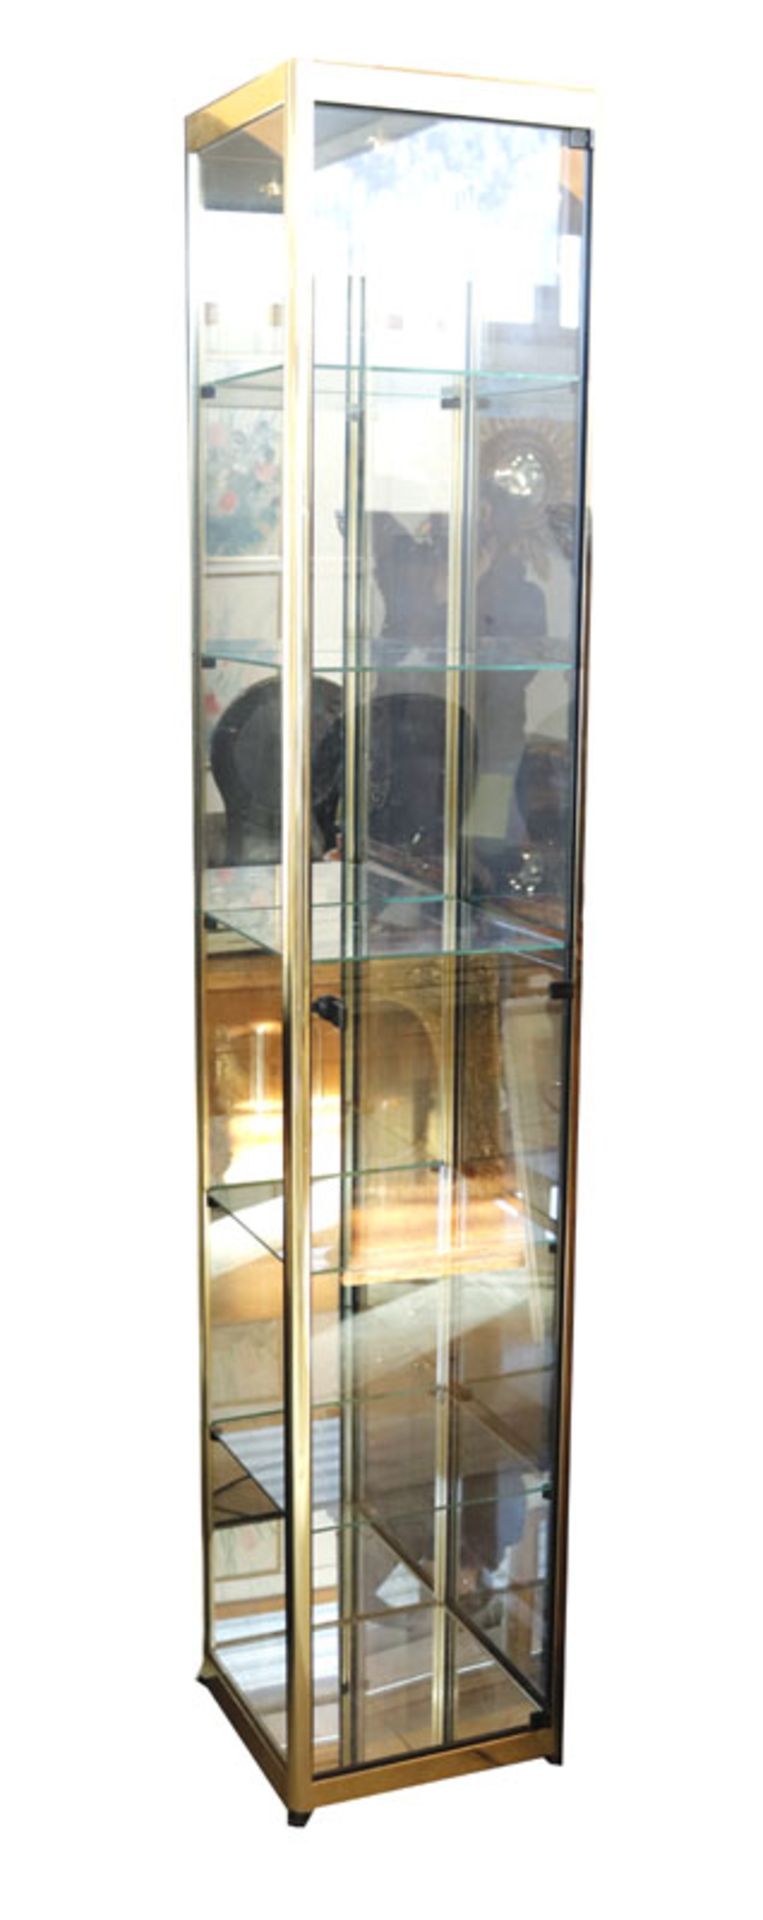 Glas-Vitrinenschrank mit Metallrahmen, beleuchtbar, Korpus mit einer Tür, H 203 cm, B 38 cm, T 38